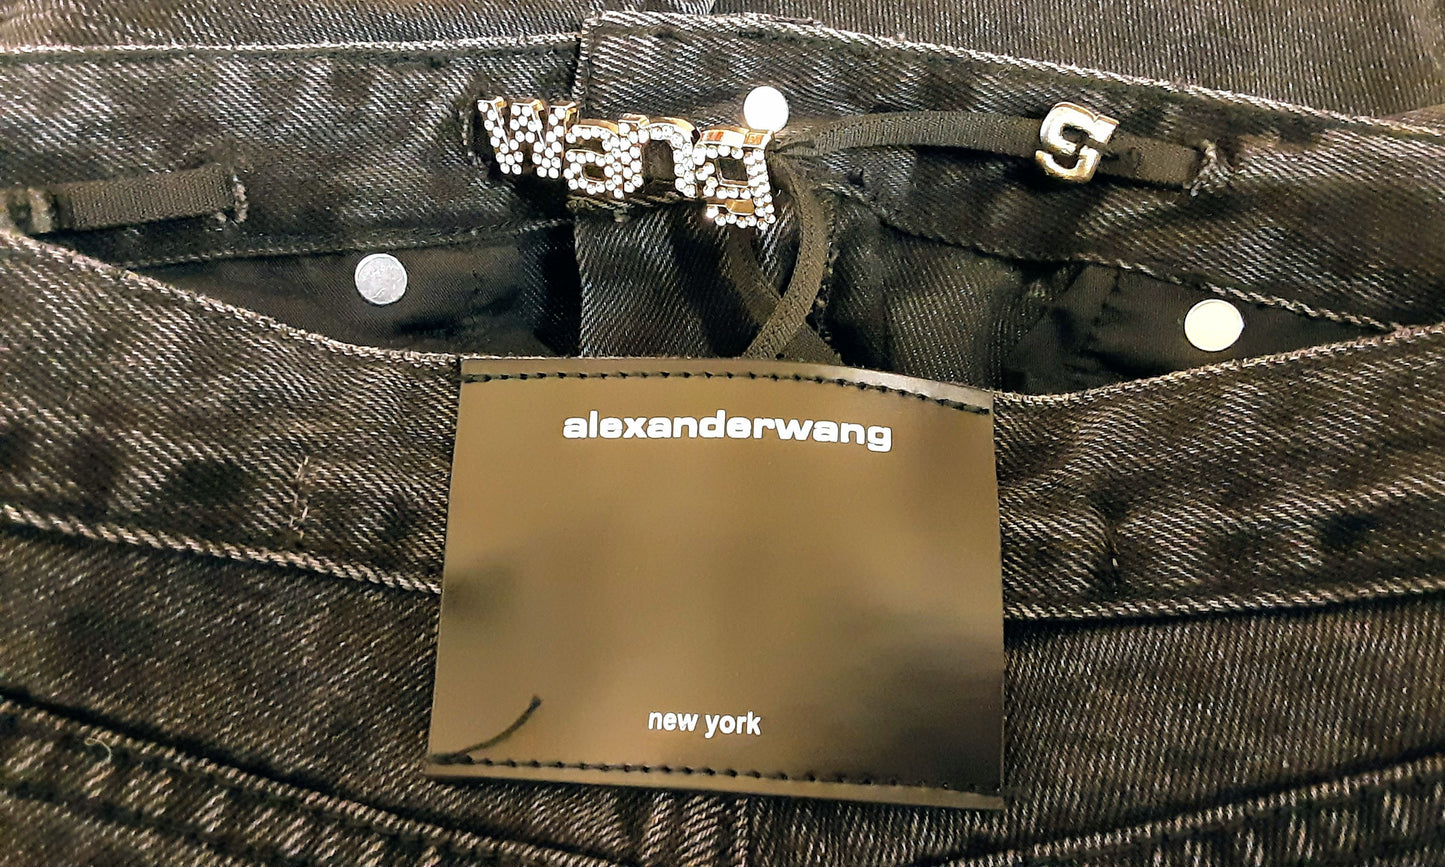 Alexander Wang Criss Cross Black Jeans size 27